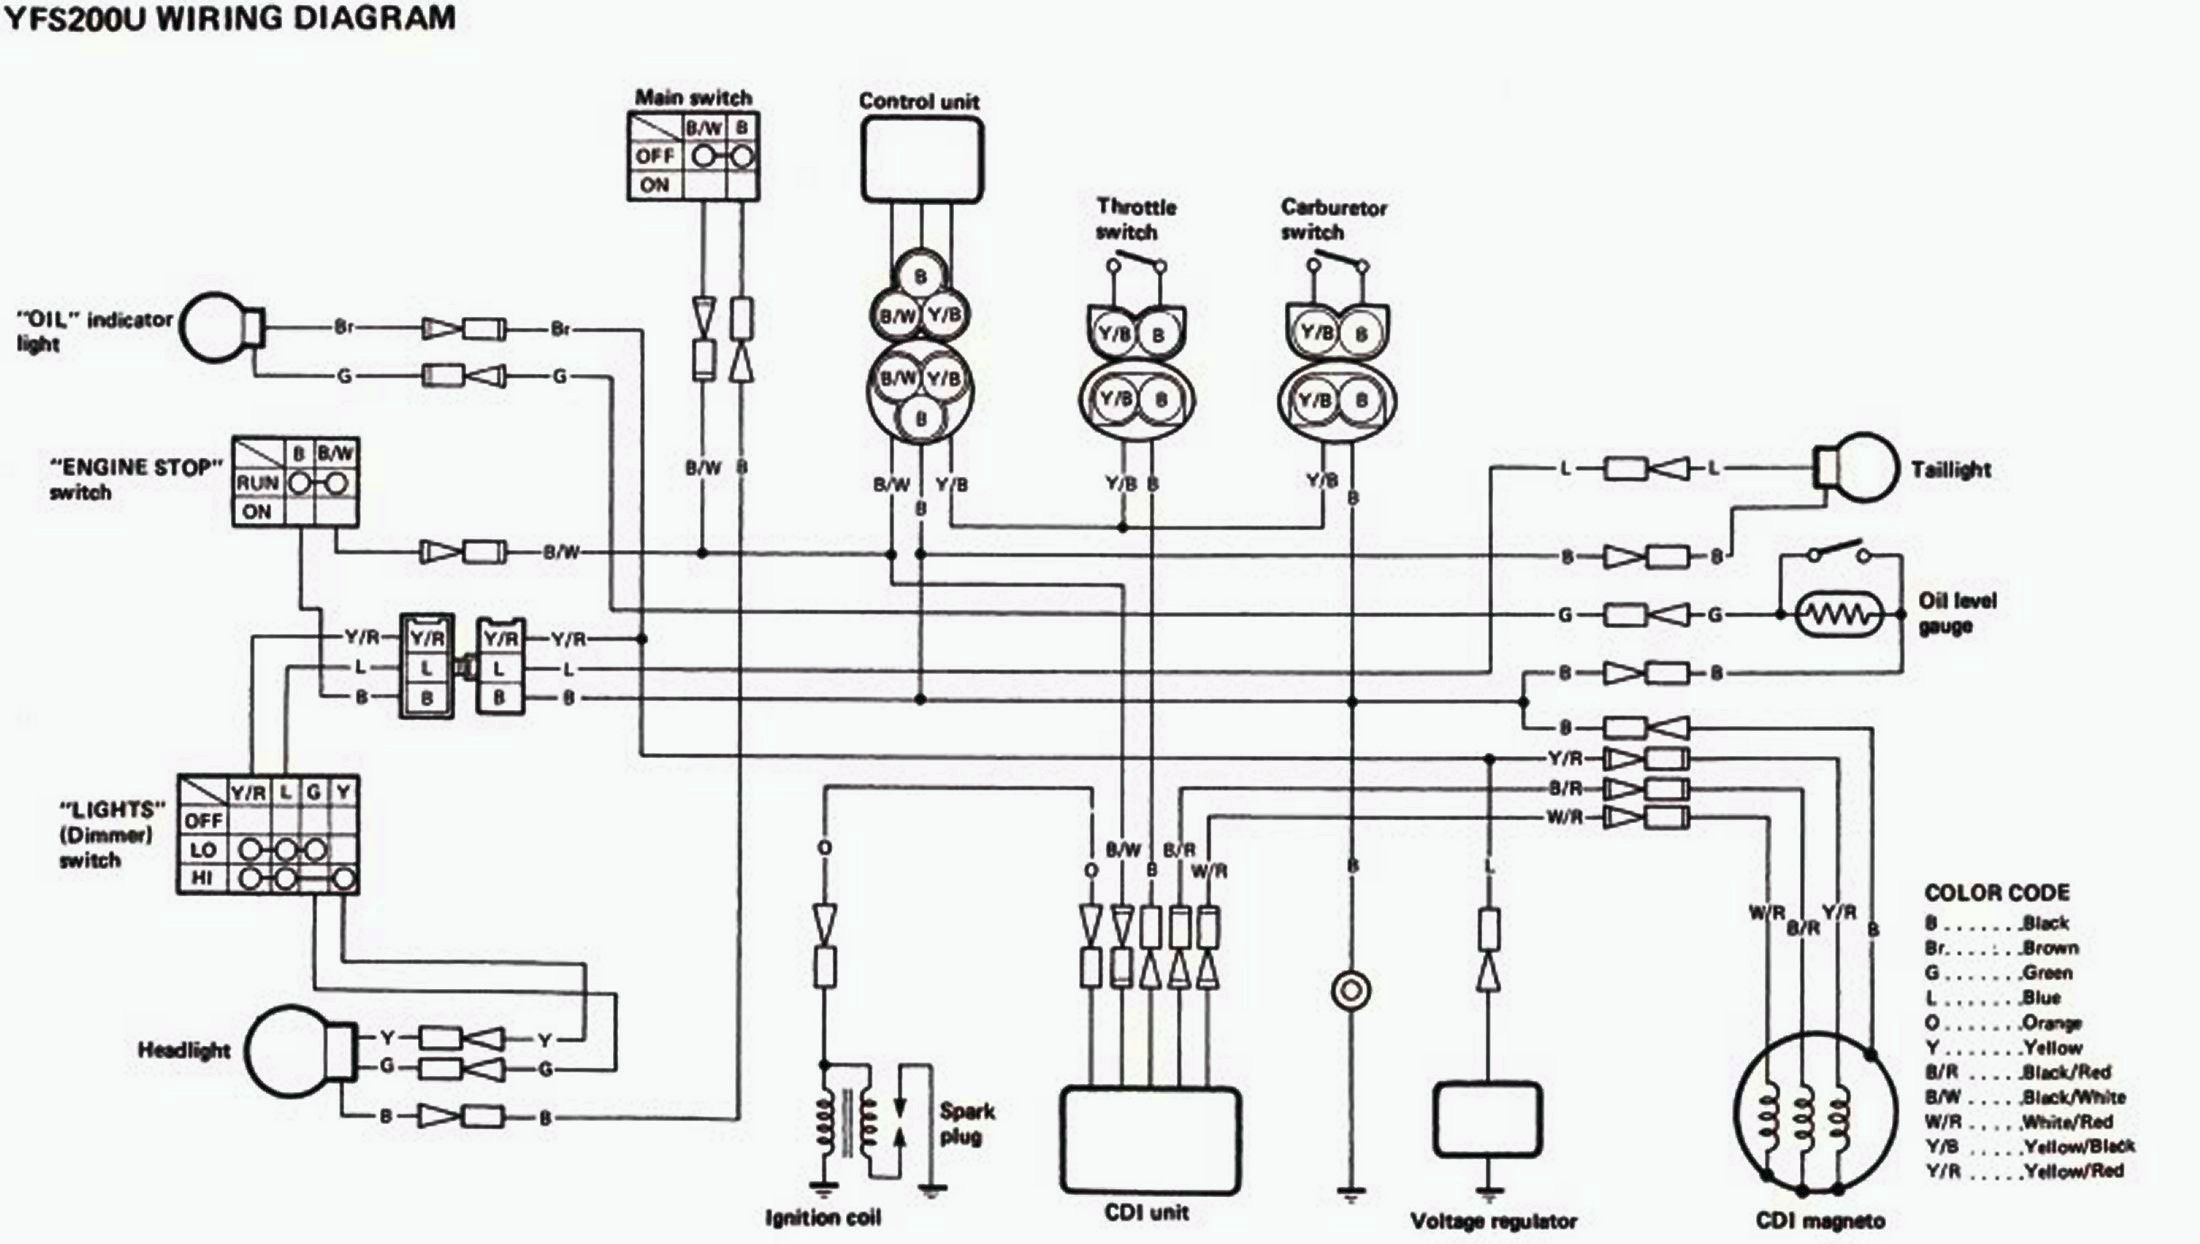 Yamaha Blaster Wiring Diagram Free Download Rate Wiring Diagram For - Yamaha Blaster Wiring Diagram